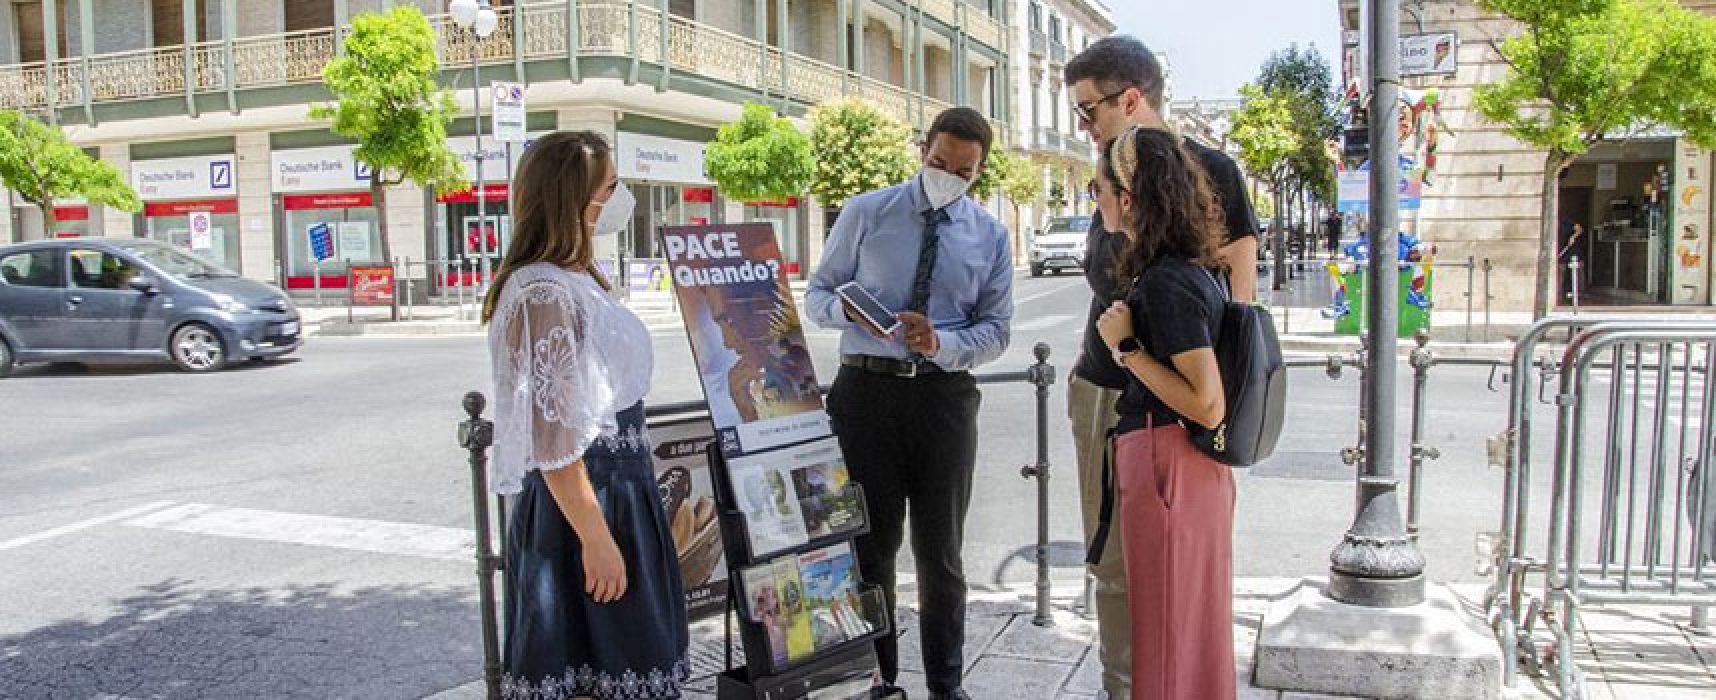 Dopo la pandemia i Testimoni di Geova tornano a contattare le persone nei luoghi pubblici